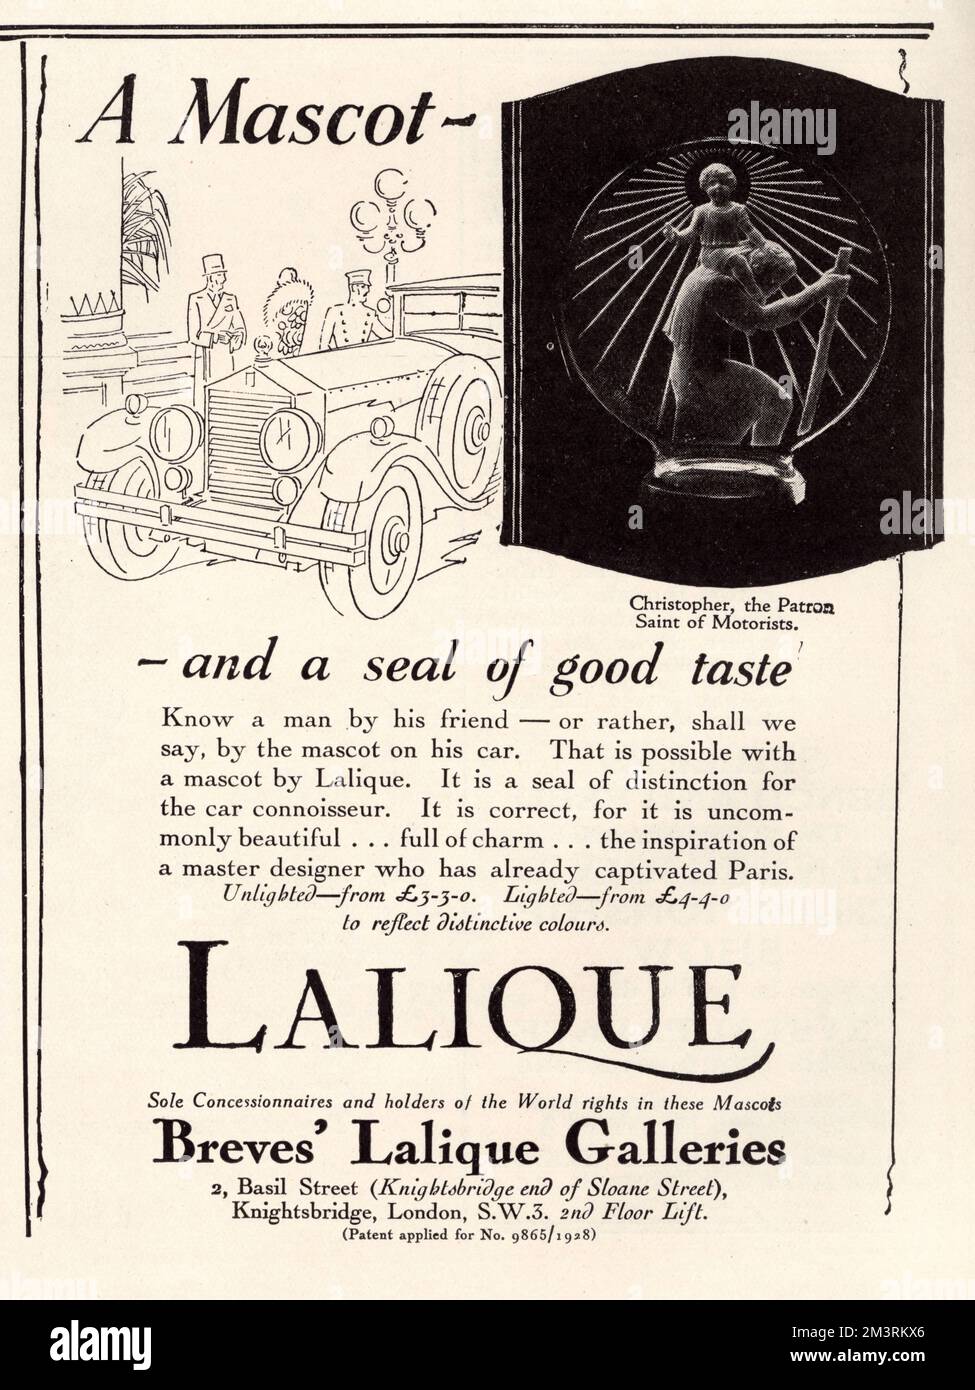 Una pubblicità per una mascotte auto Lalique da Breves' Lalique Galeries, Knightbridge; 'Una mascotte - e un sigillo di buon gusto'. L'annuncio contiene una piccola illustrazione di un'automobile e un'immagine di una mascotte di Christopher, la Santa patrona degli automobilisti. Data: 1928 Foto Stock